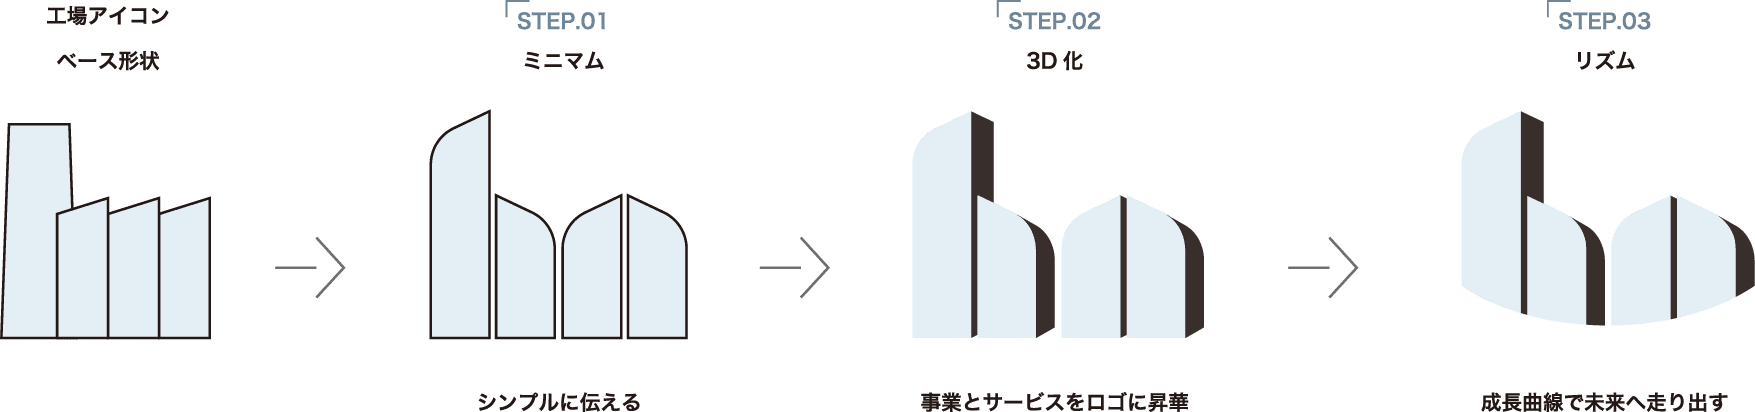 工場アイコン　ベース形状　STEP01 ミニマム　シンプルに伝える　STEP02 3D化　事業とアサービスをロゴに昇華 STEP03　リズム　成長曲線で未来へ走り出す